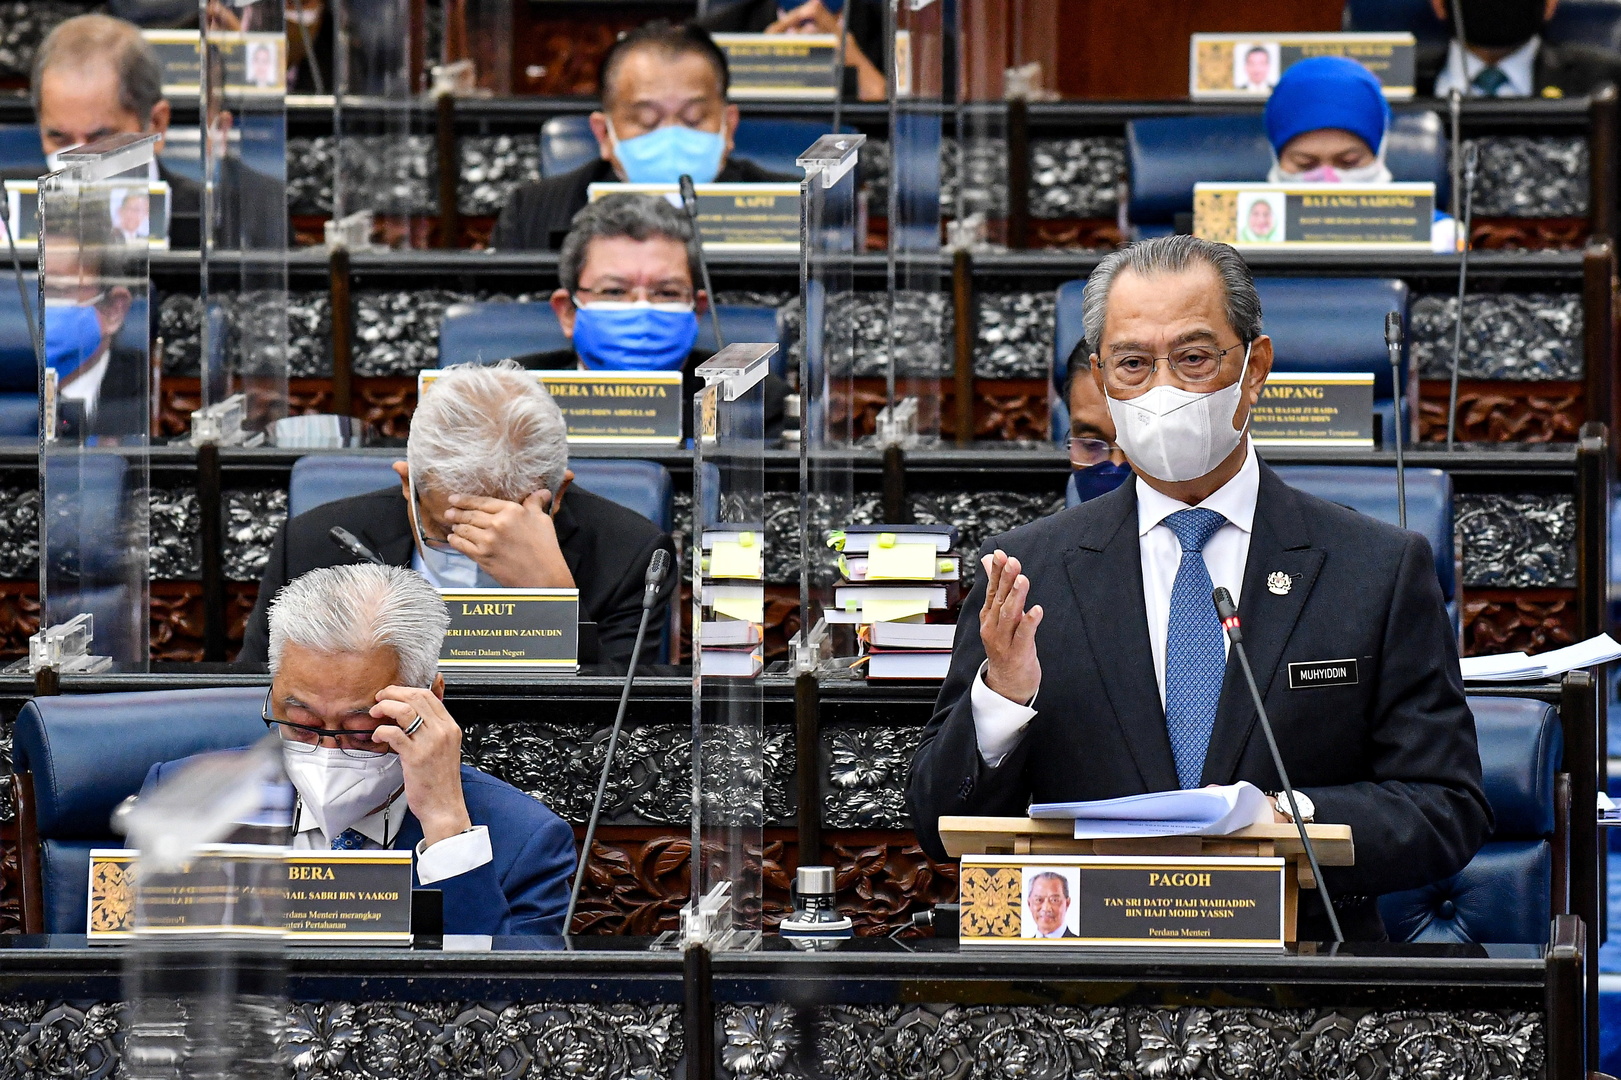 رئيس الوزراء الماليزي يؤكد أنه يحظى بدعم غالبية المشرعين